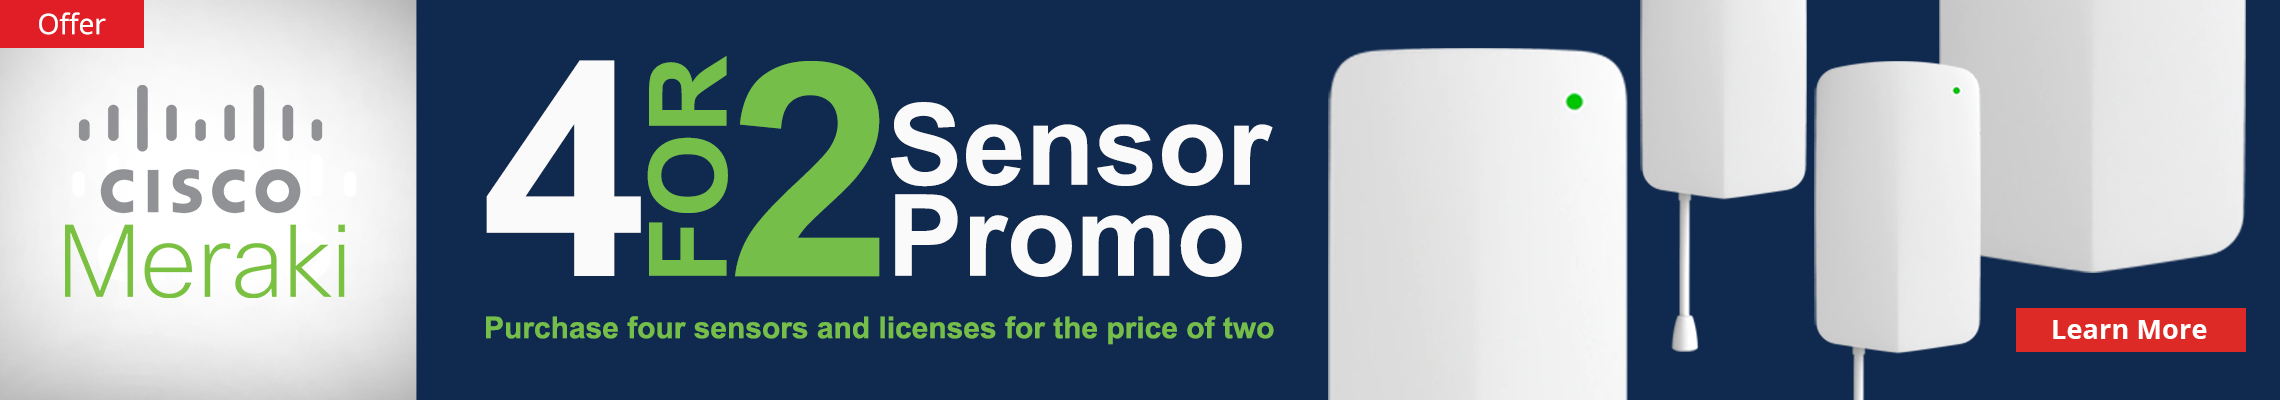 Cisco Meraki Sensors: 4 for 2 Promo Banner